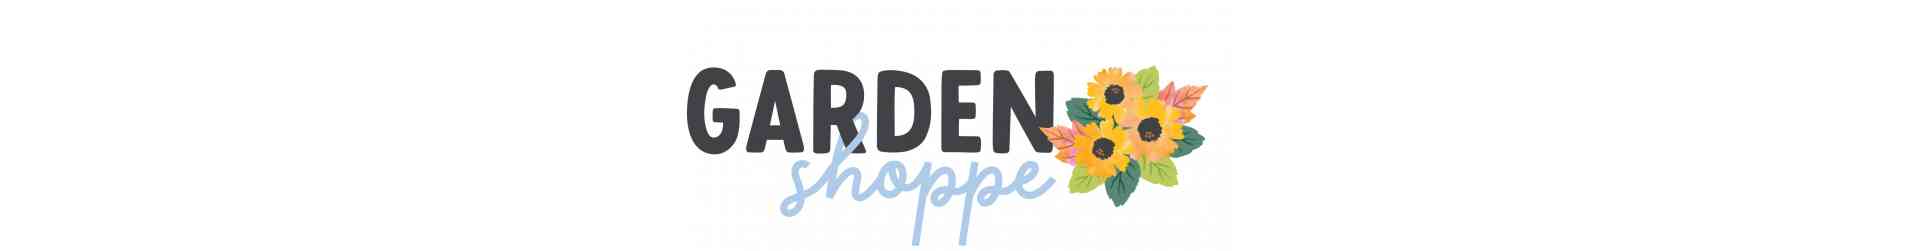 Garden Shoppe